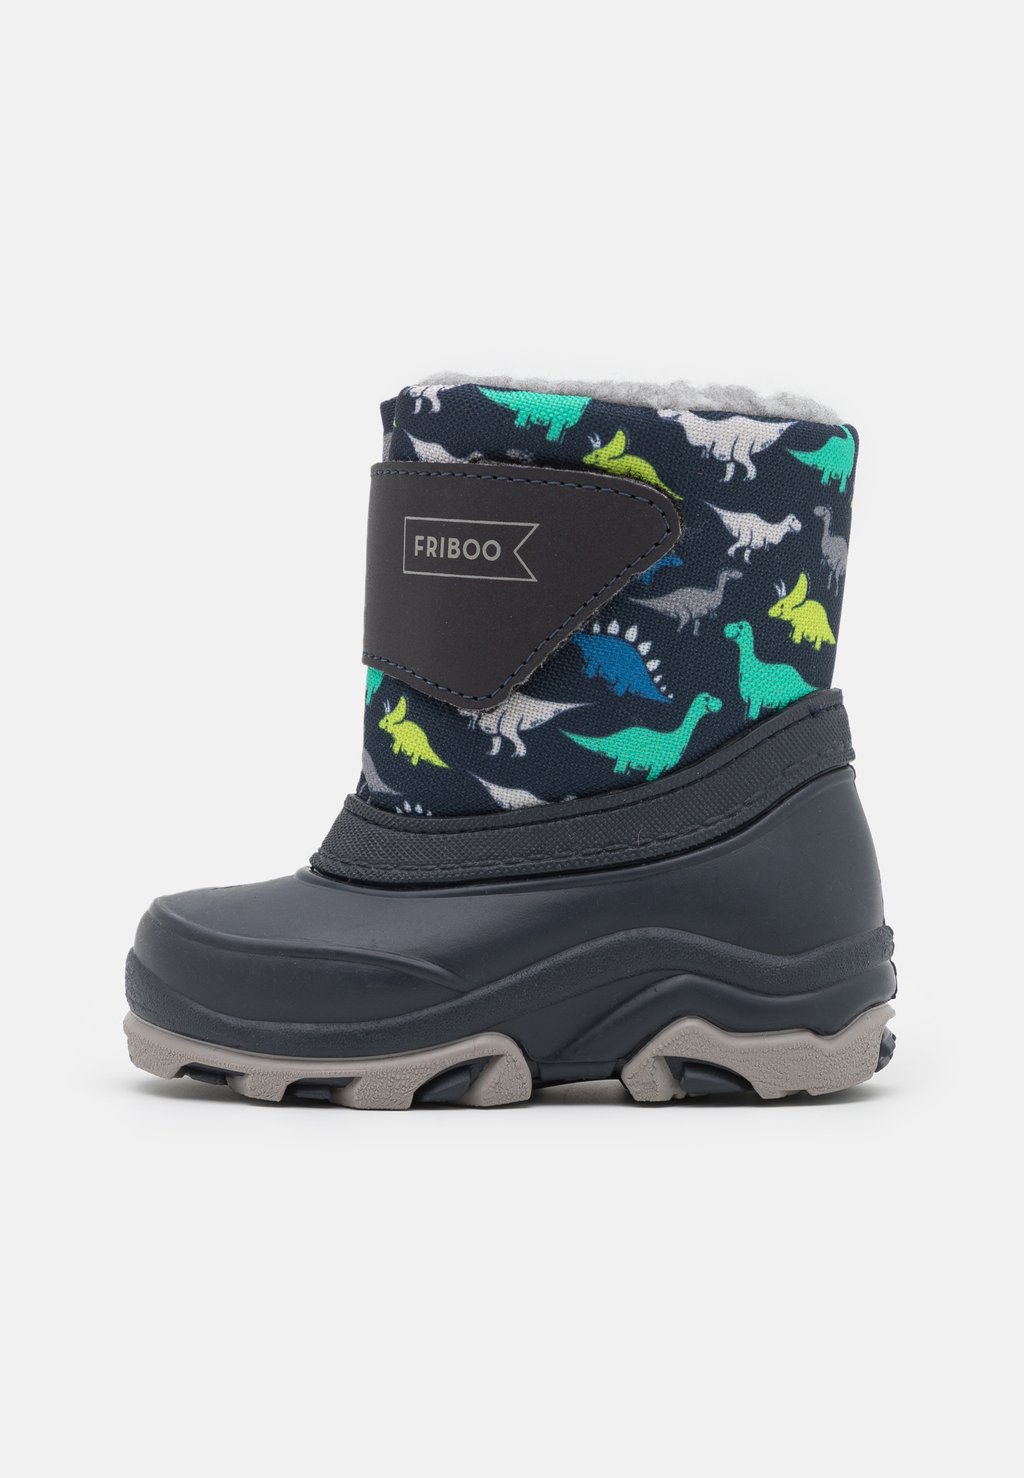 Снегоступы/зимние ботинки Friboo, цвет dark blue